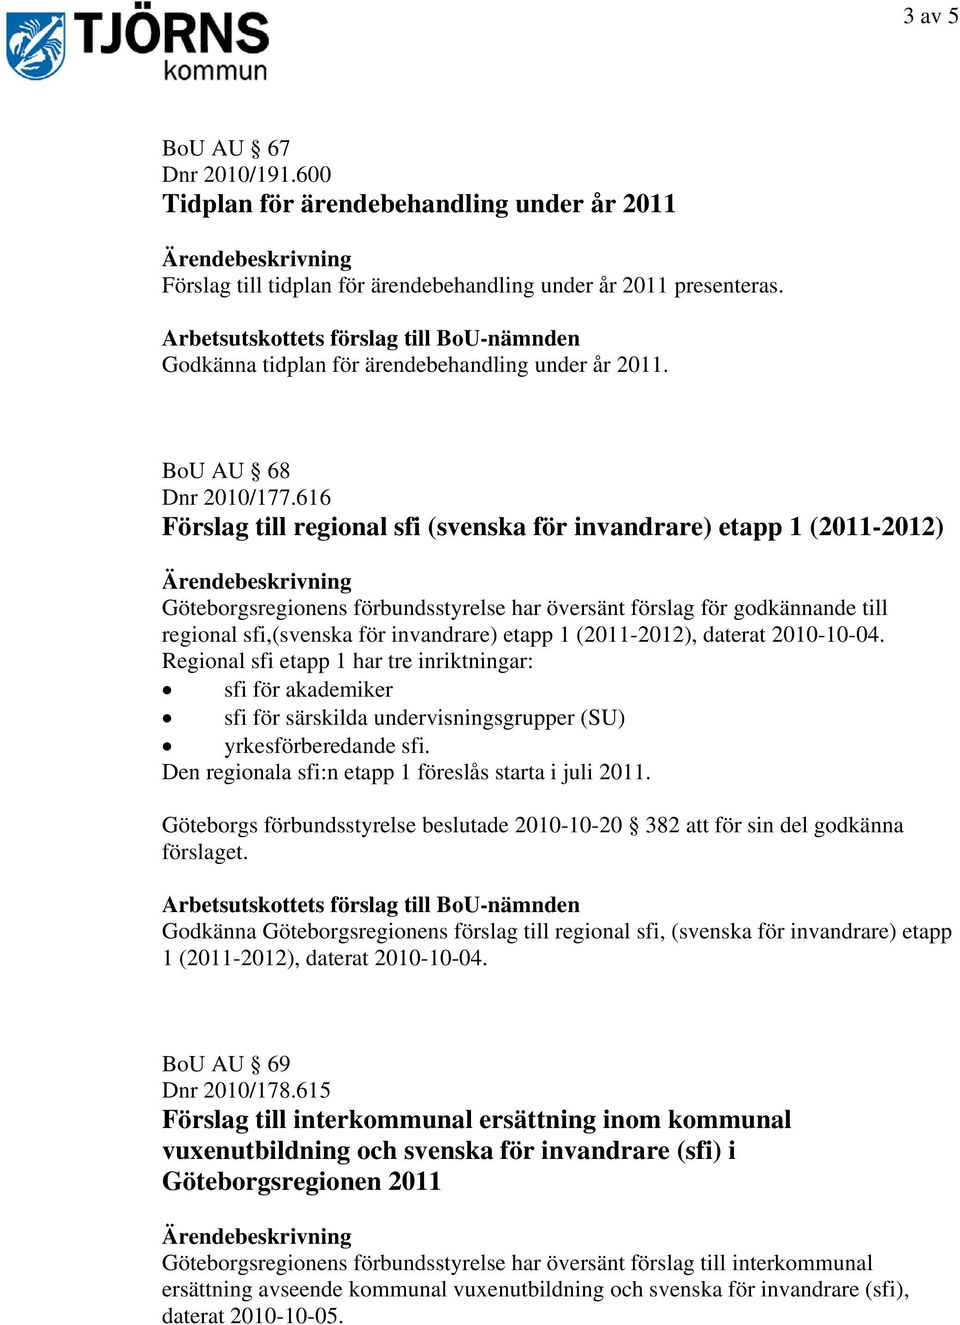 616 Förslag till regional sfi (svenska för invandrare) etapp 1 (2011-2012) Göteborgsregionens förbundsstyrelse har översänt förslag för godkännande till regional sfi,(svenska för invandrare) etapp 1